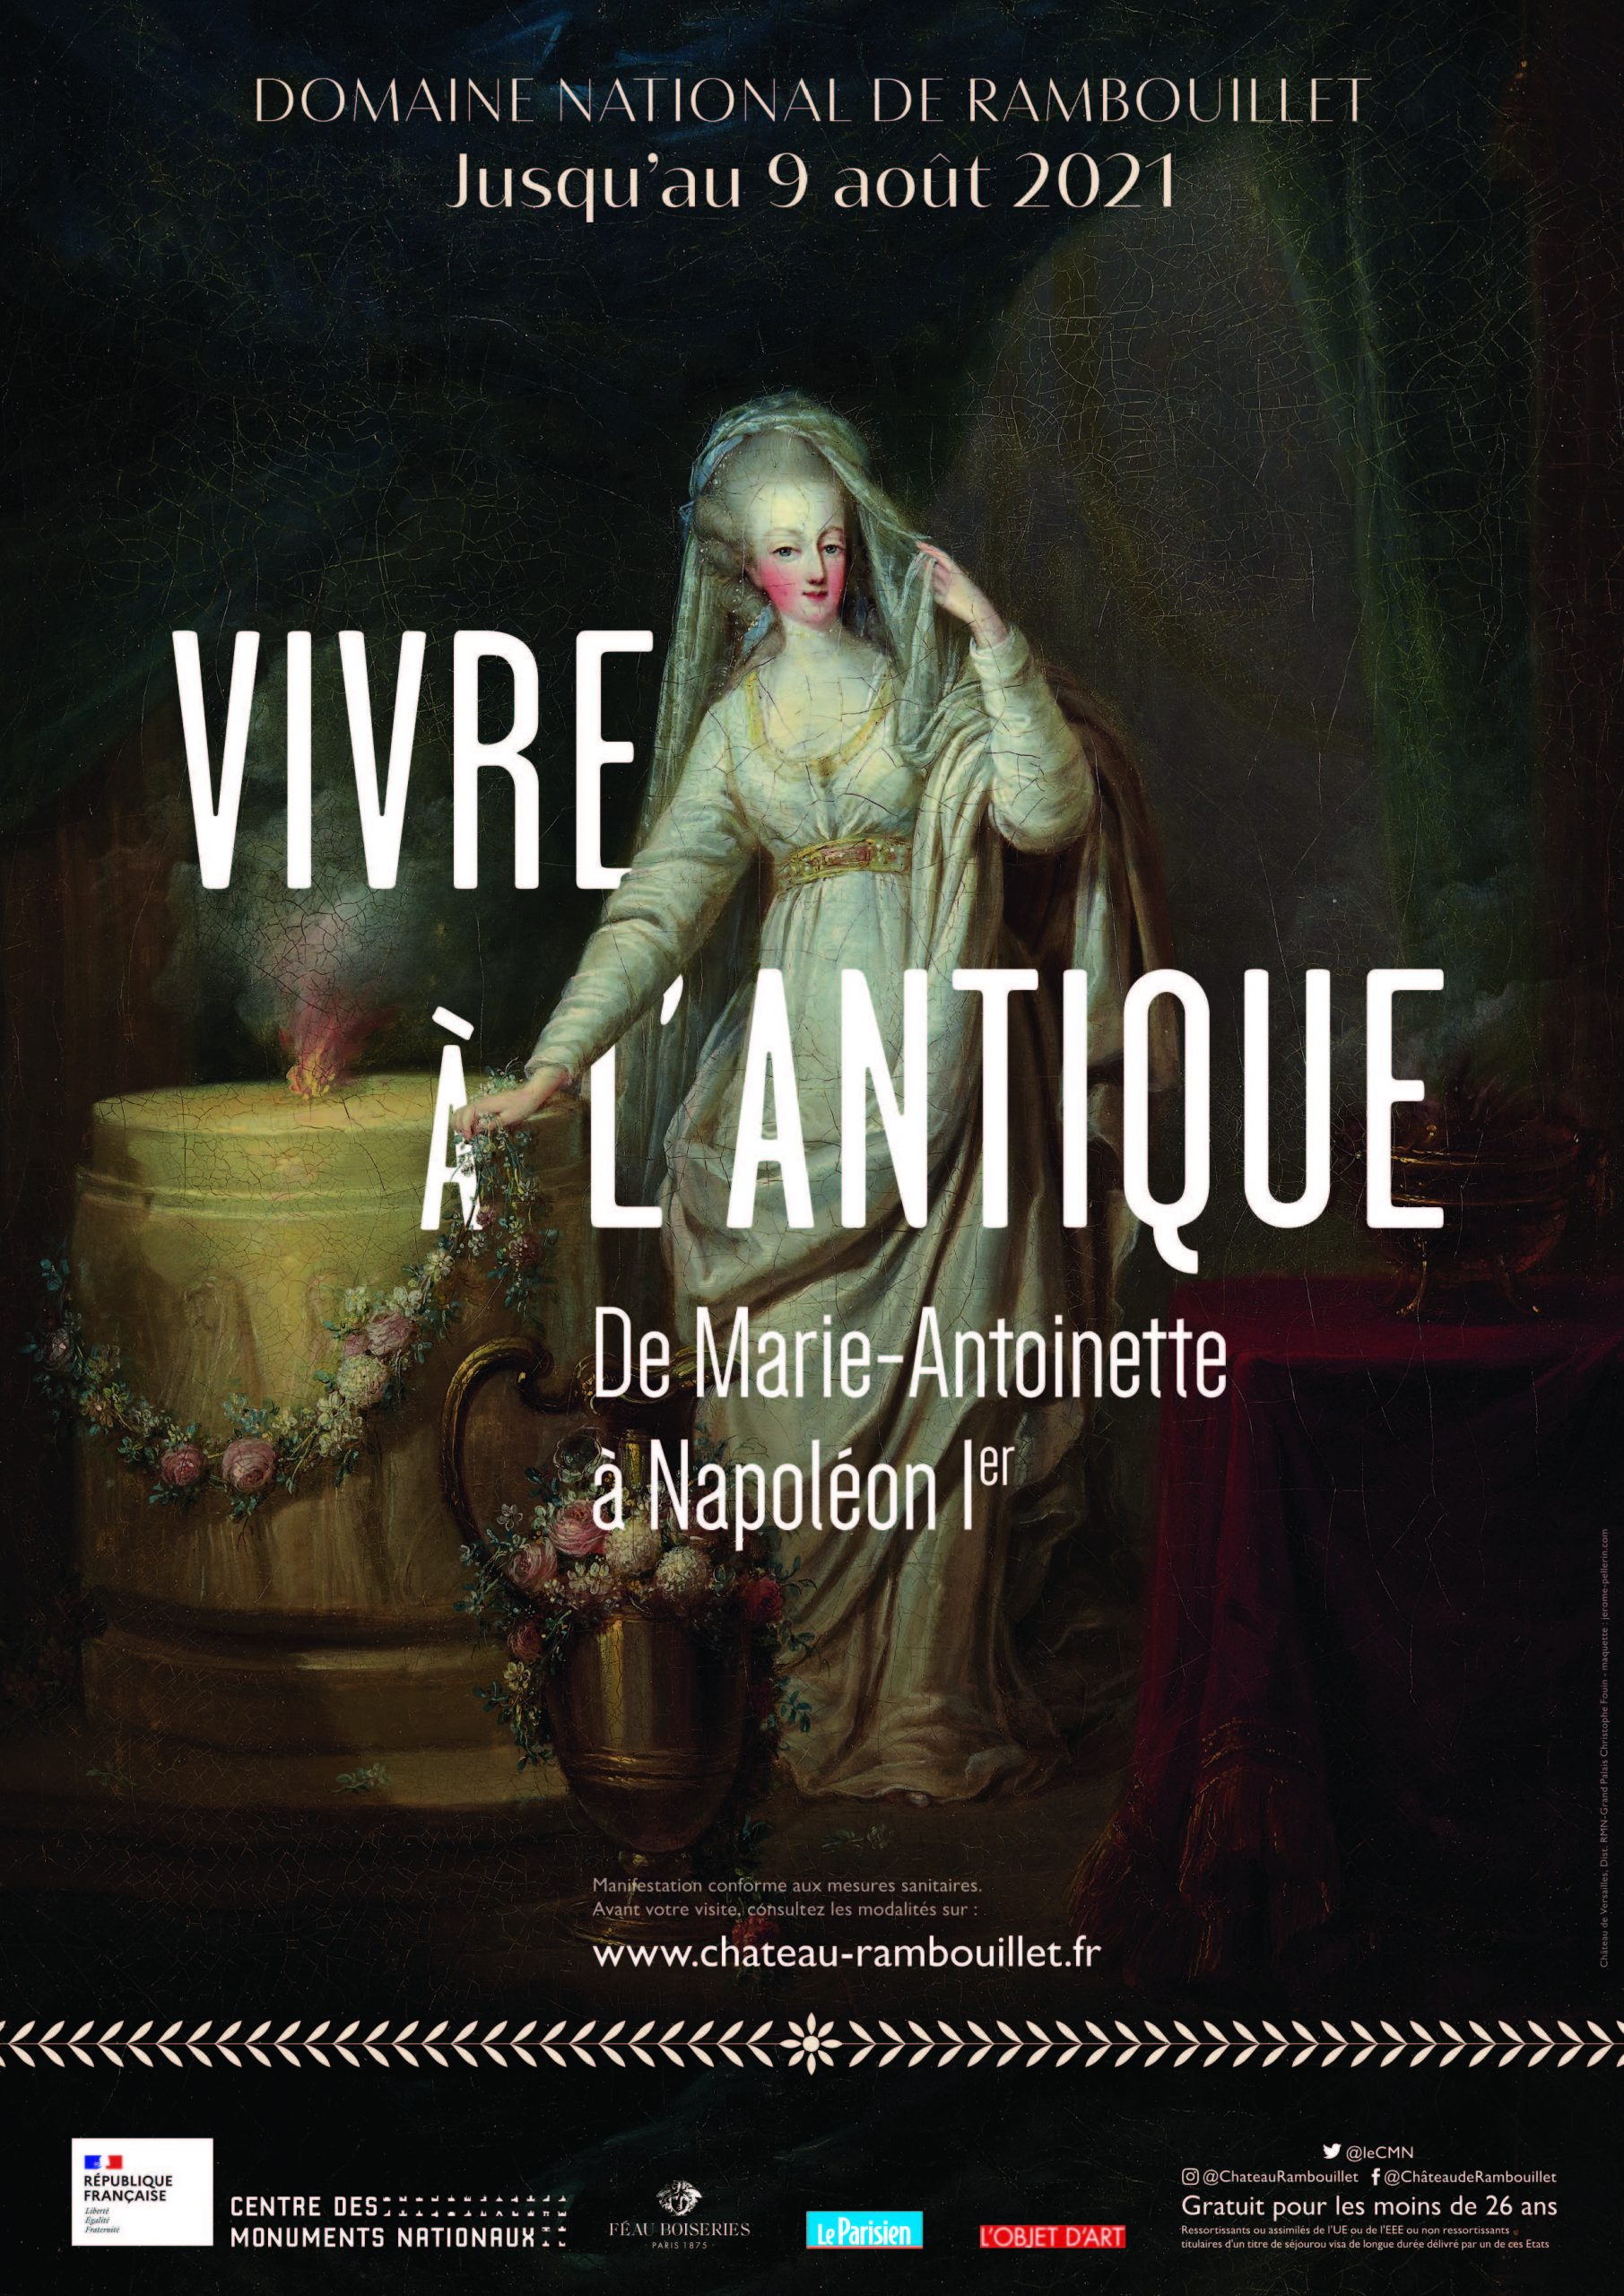 Le Centre des monuments nationaux présente l’exposition « Vivre à l’antique, de Marie Antoinette à Napoléon Ier » au château de Rambouillet